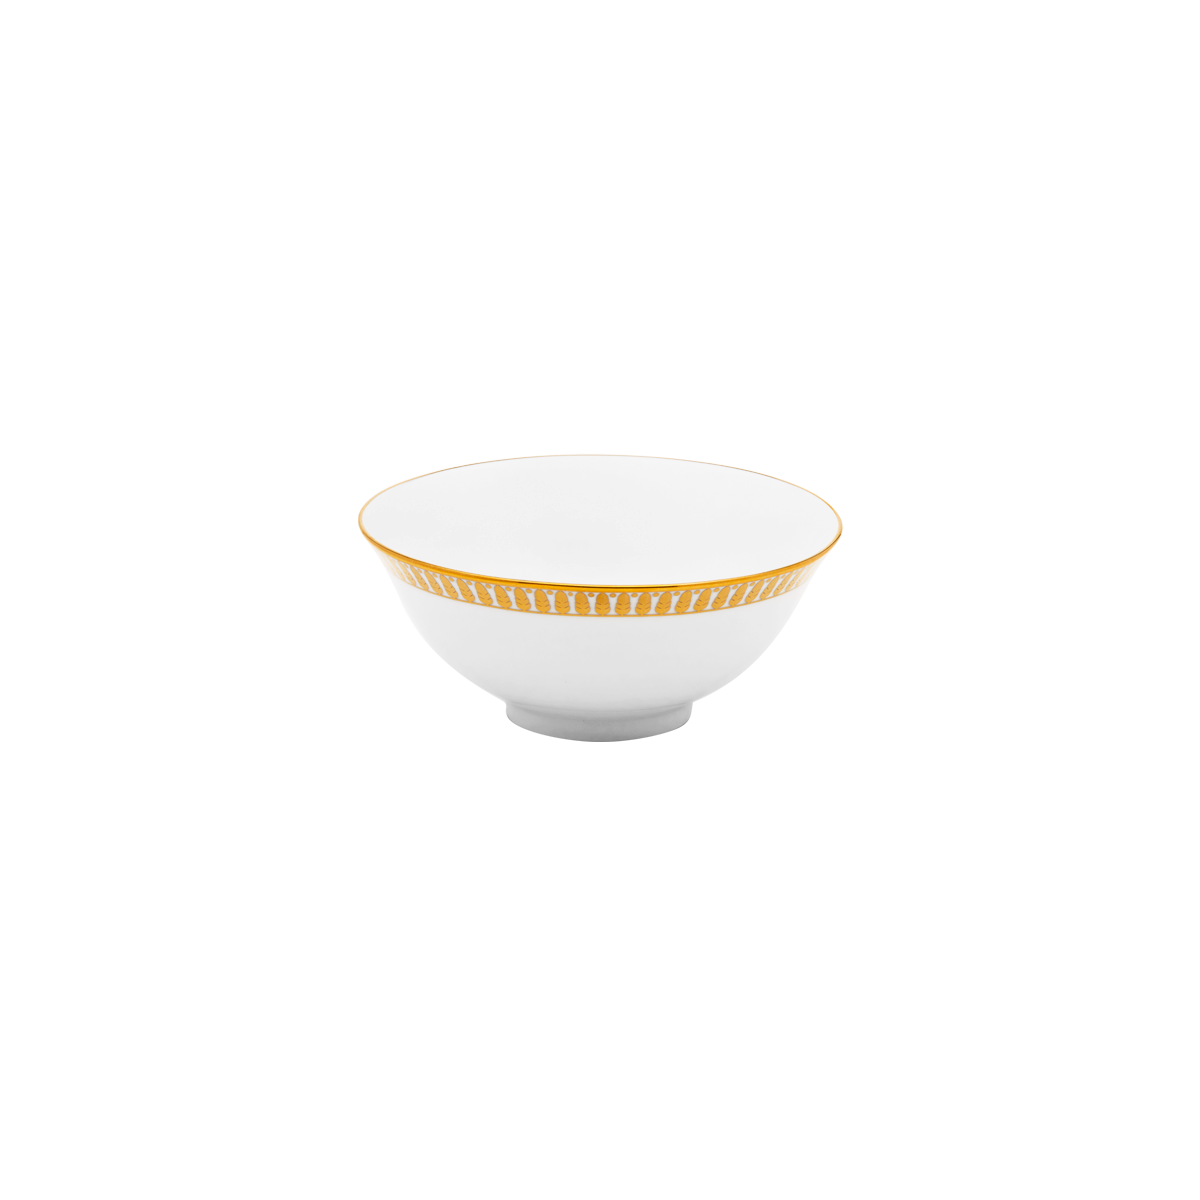 Plumes Rim Soup Plate